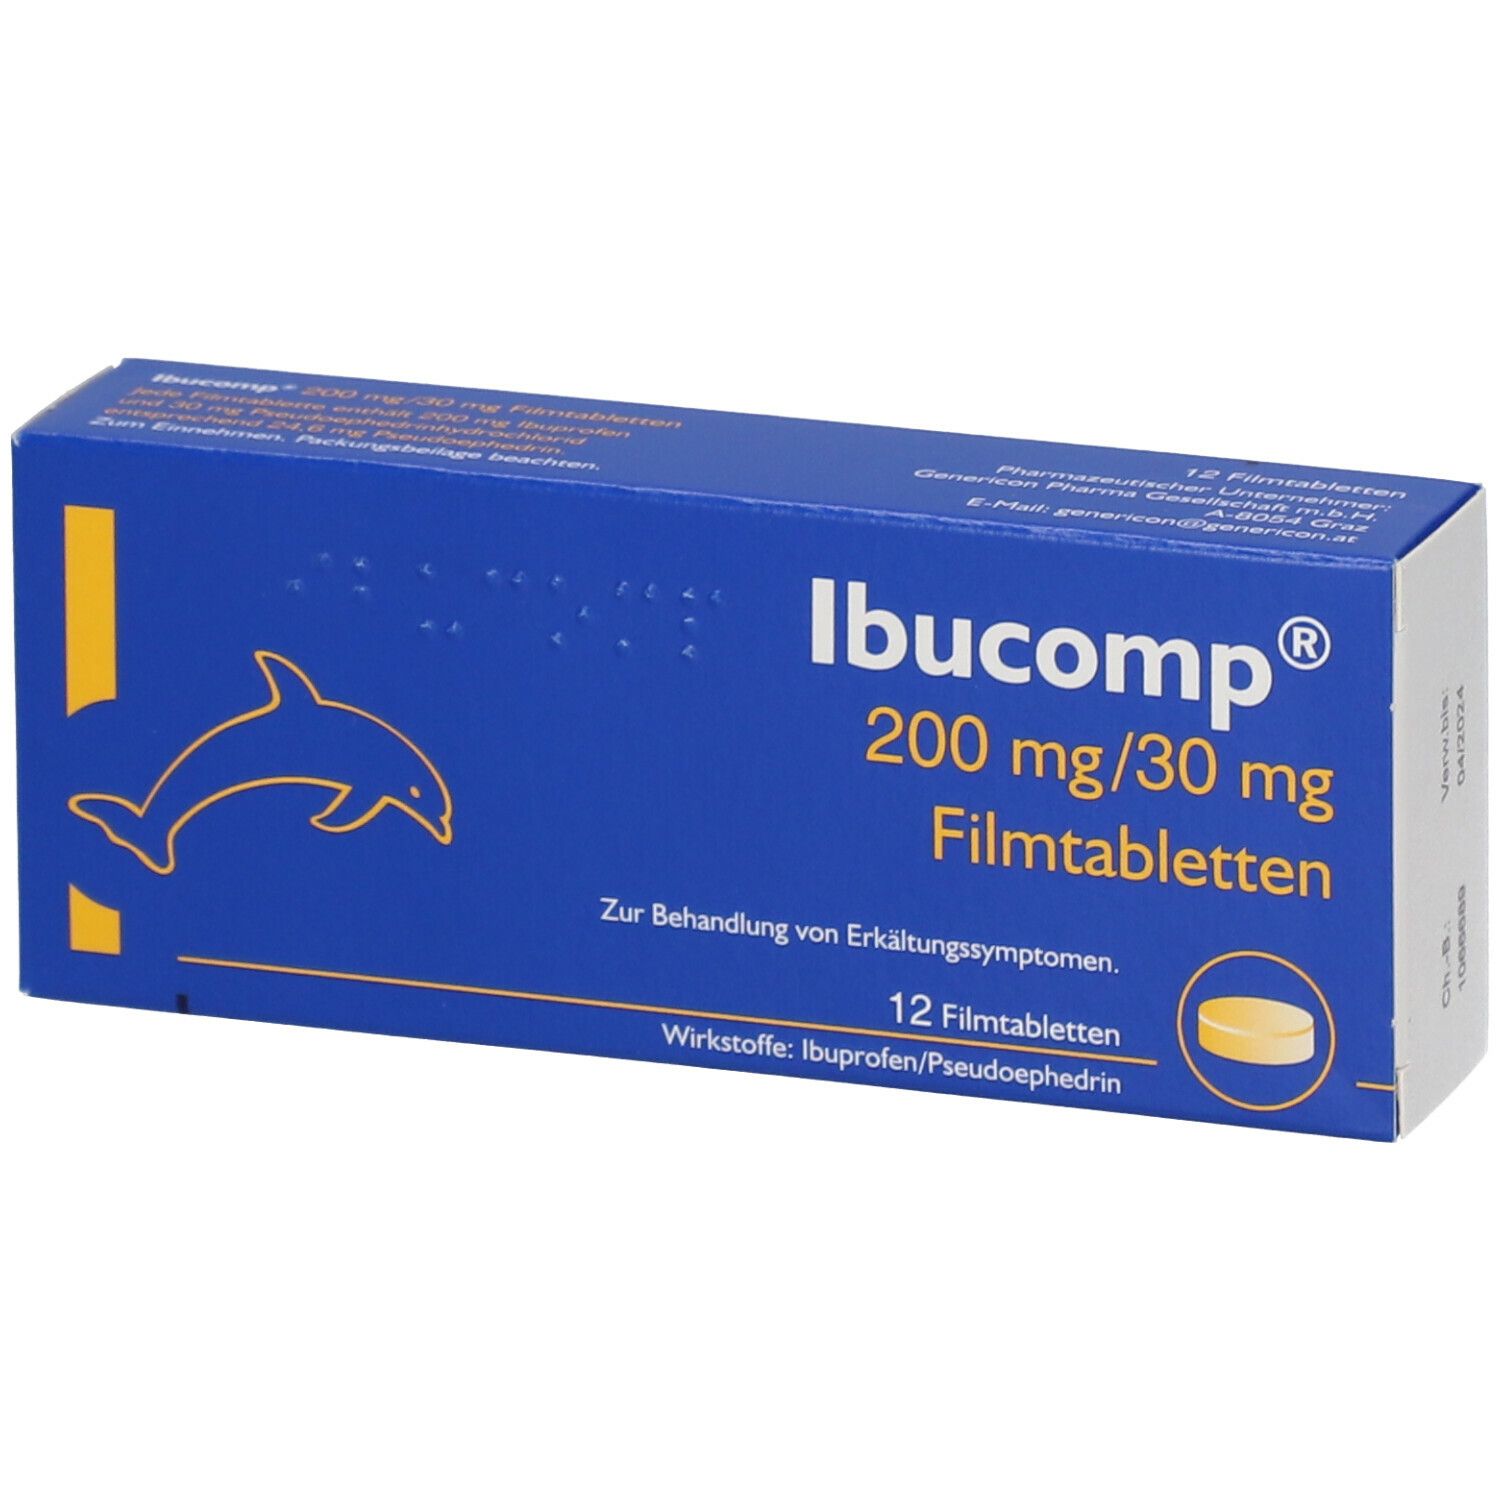 Ibucomp® 200 mg/30 mg Filmtablette